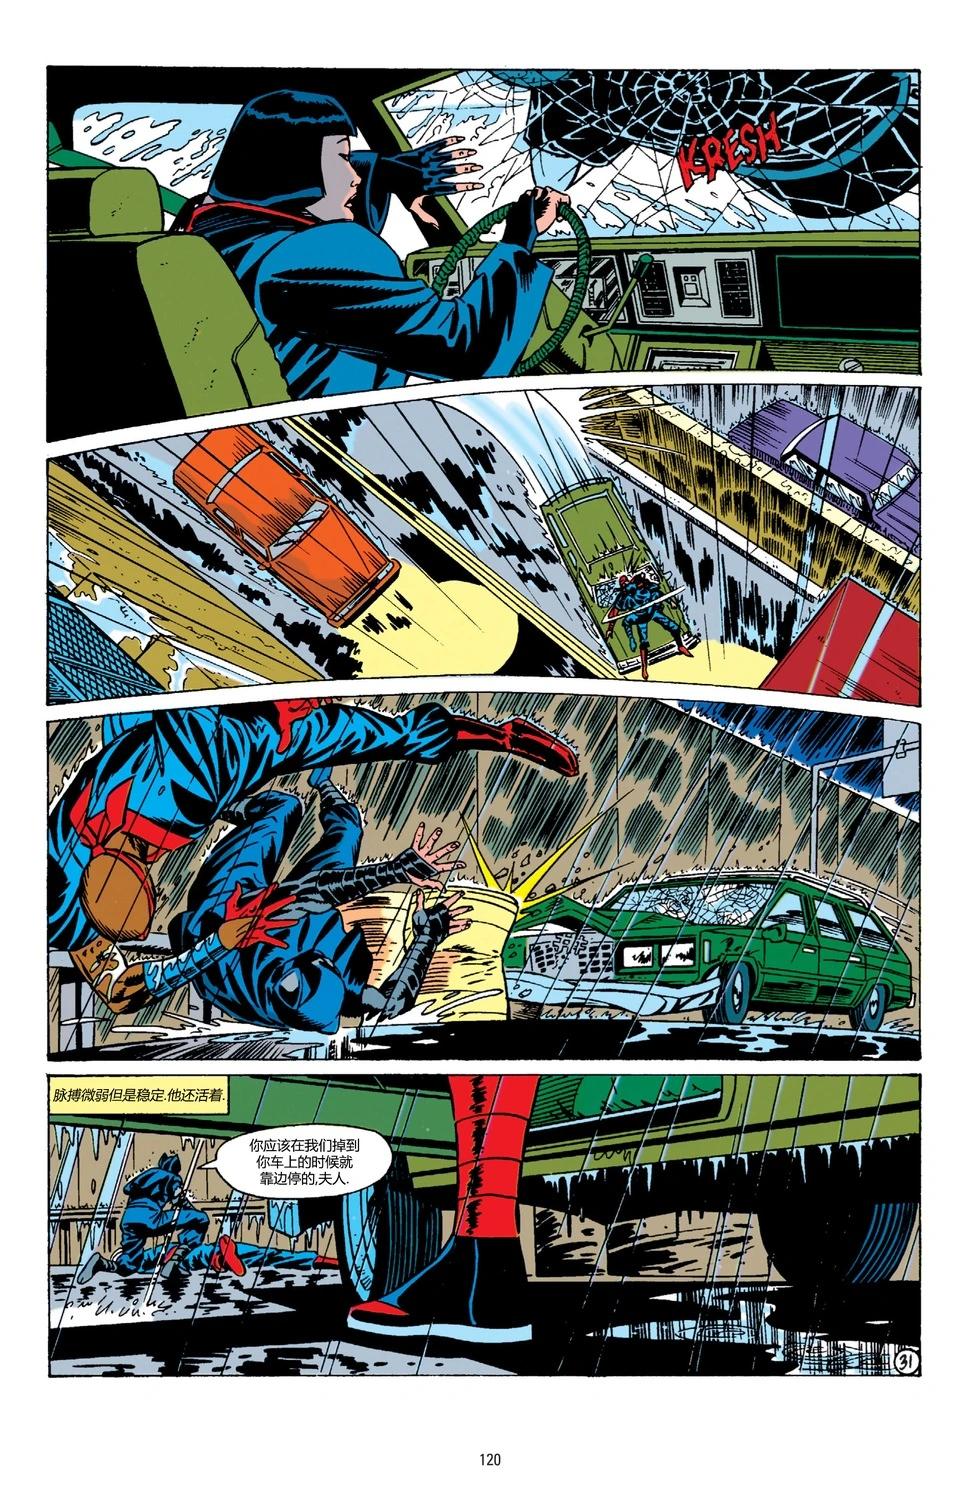 蝙蝠俠：騎士隕落 - 062-偵探漫畫#676 - 2